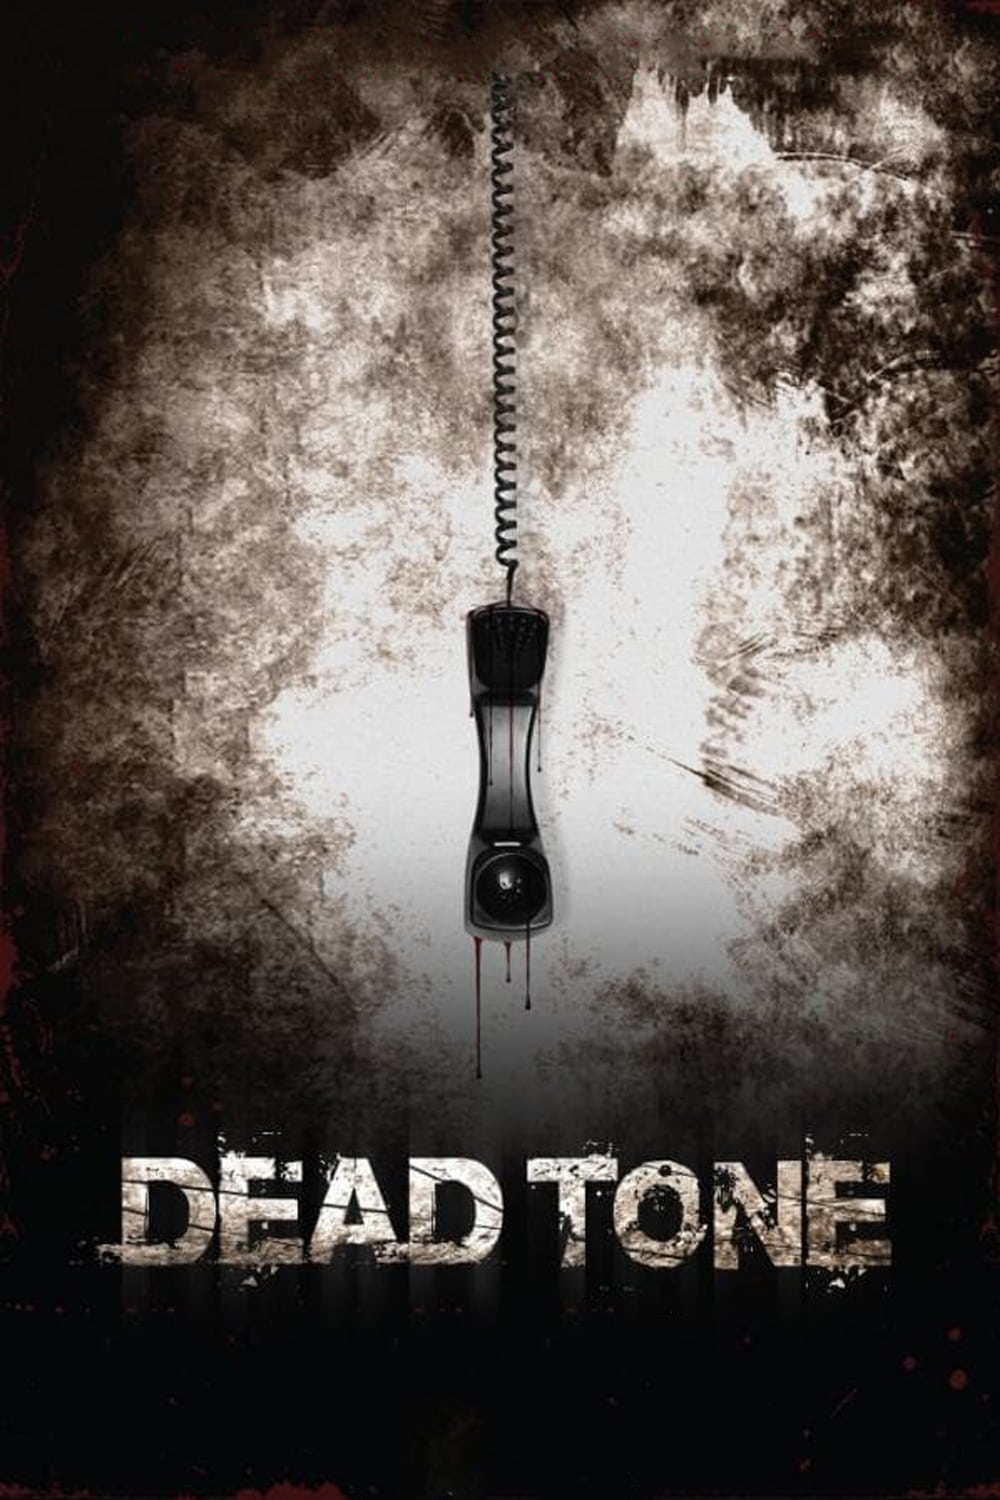 Plakat von "Dead Tone"